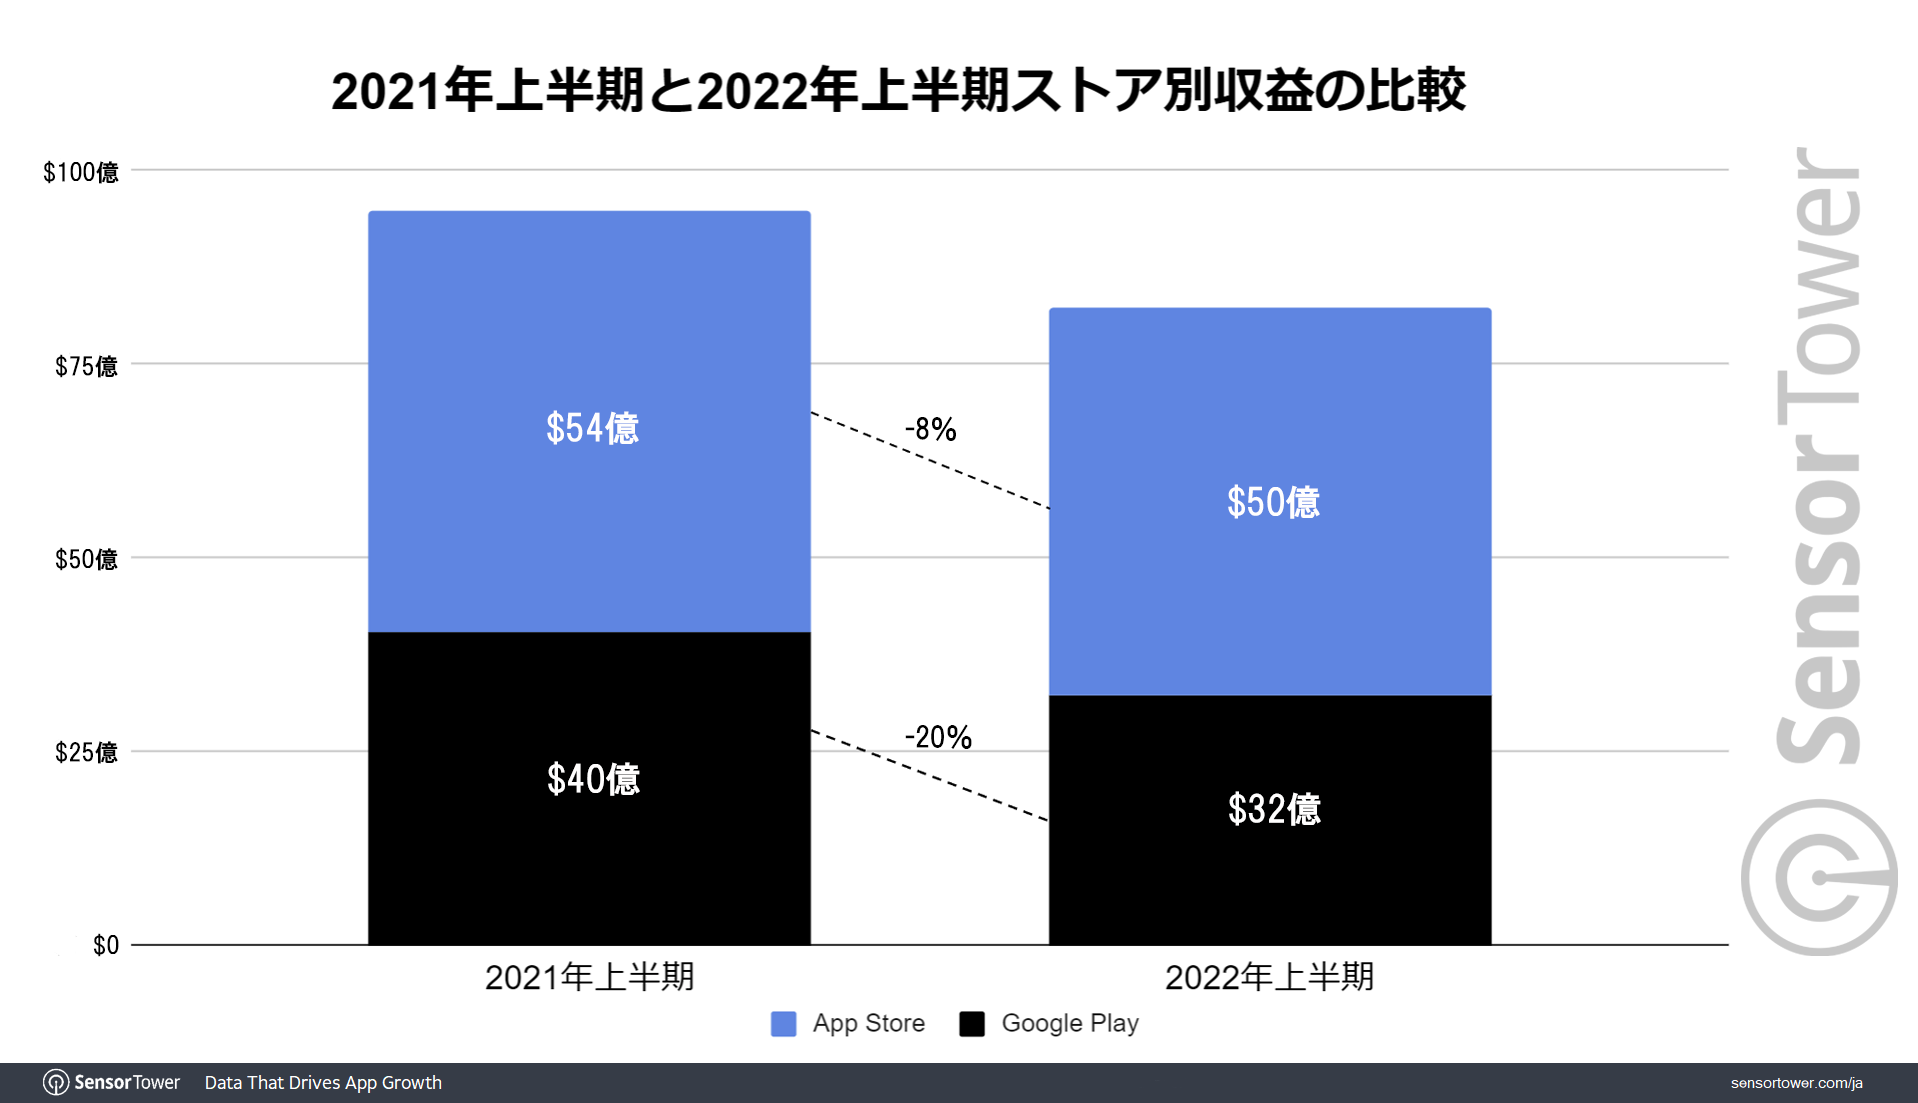 JP: Revenue comparison 2021_1H with 2022_1H